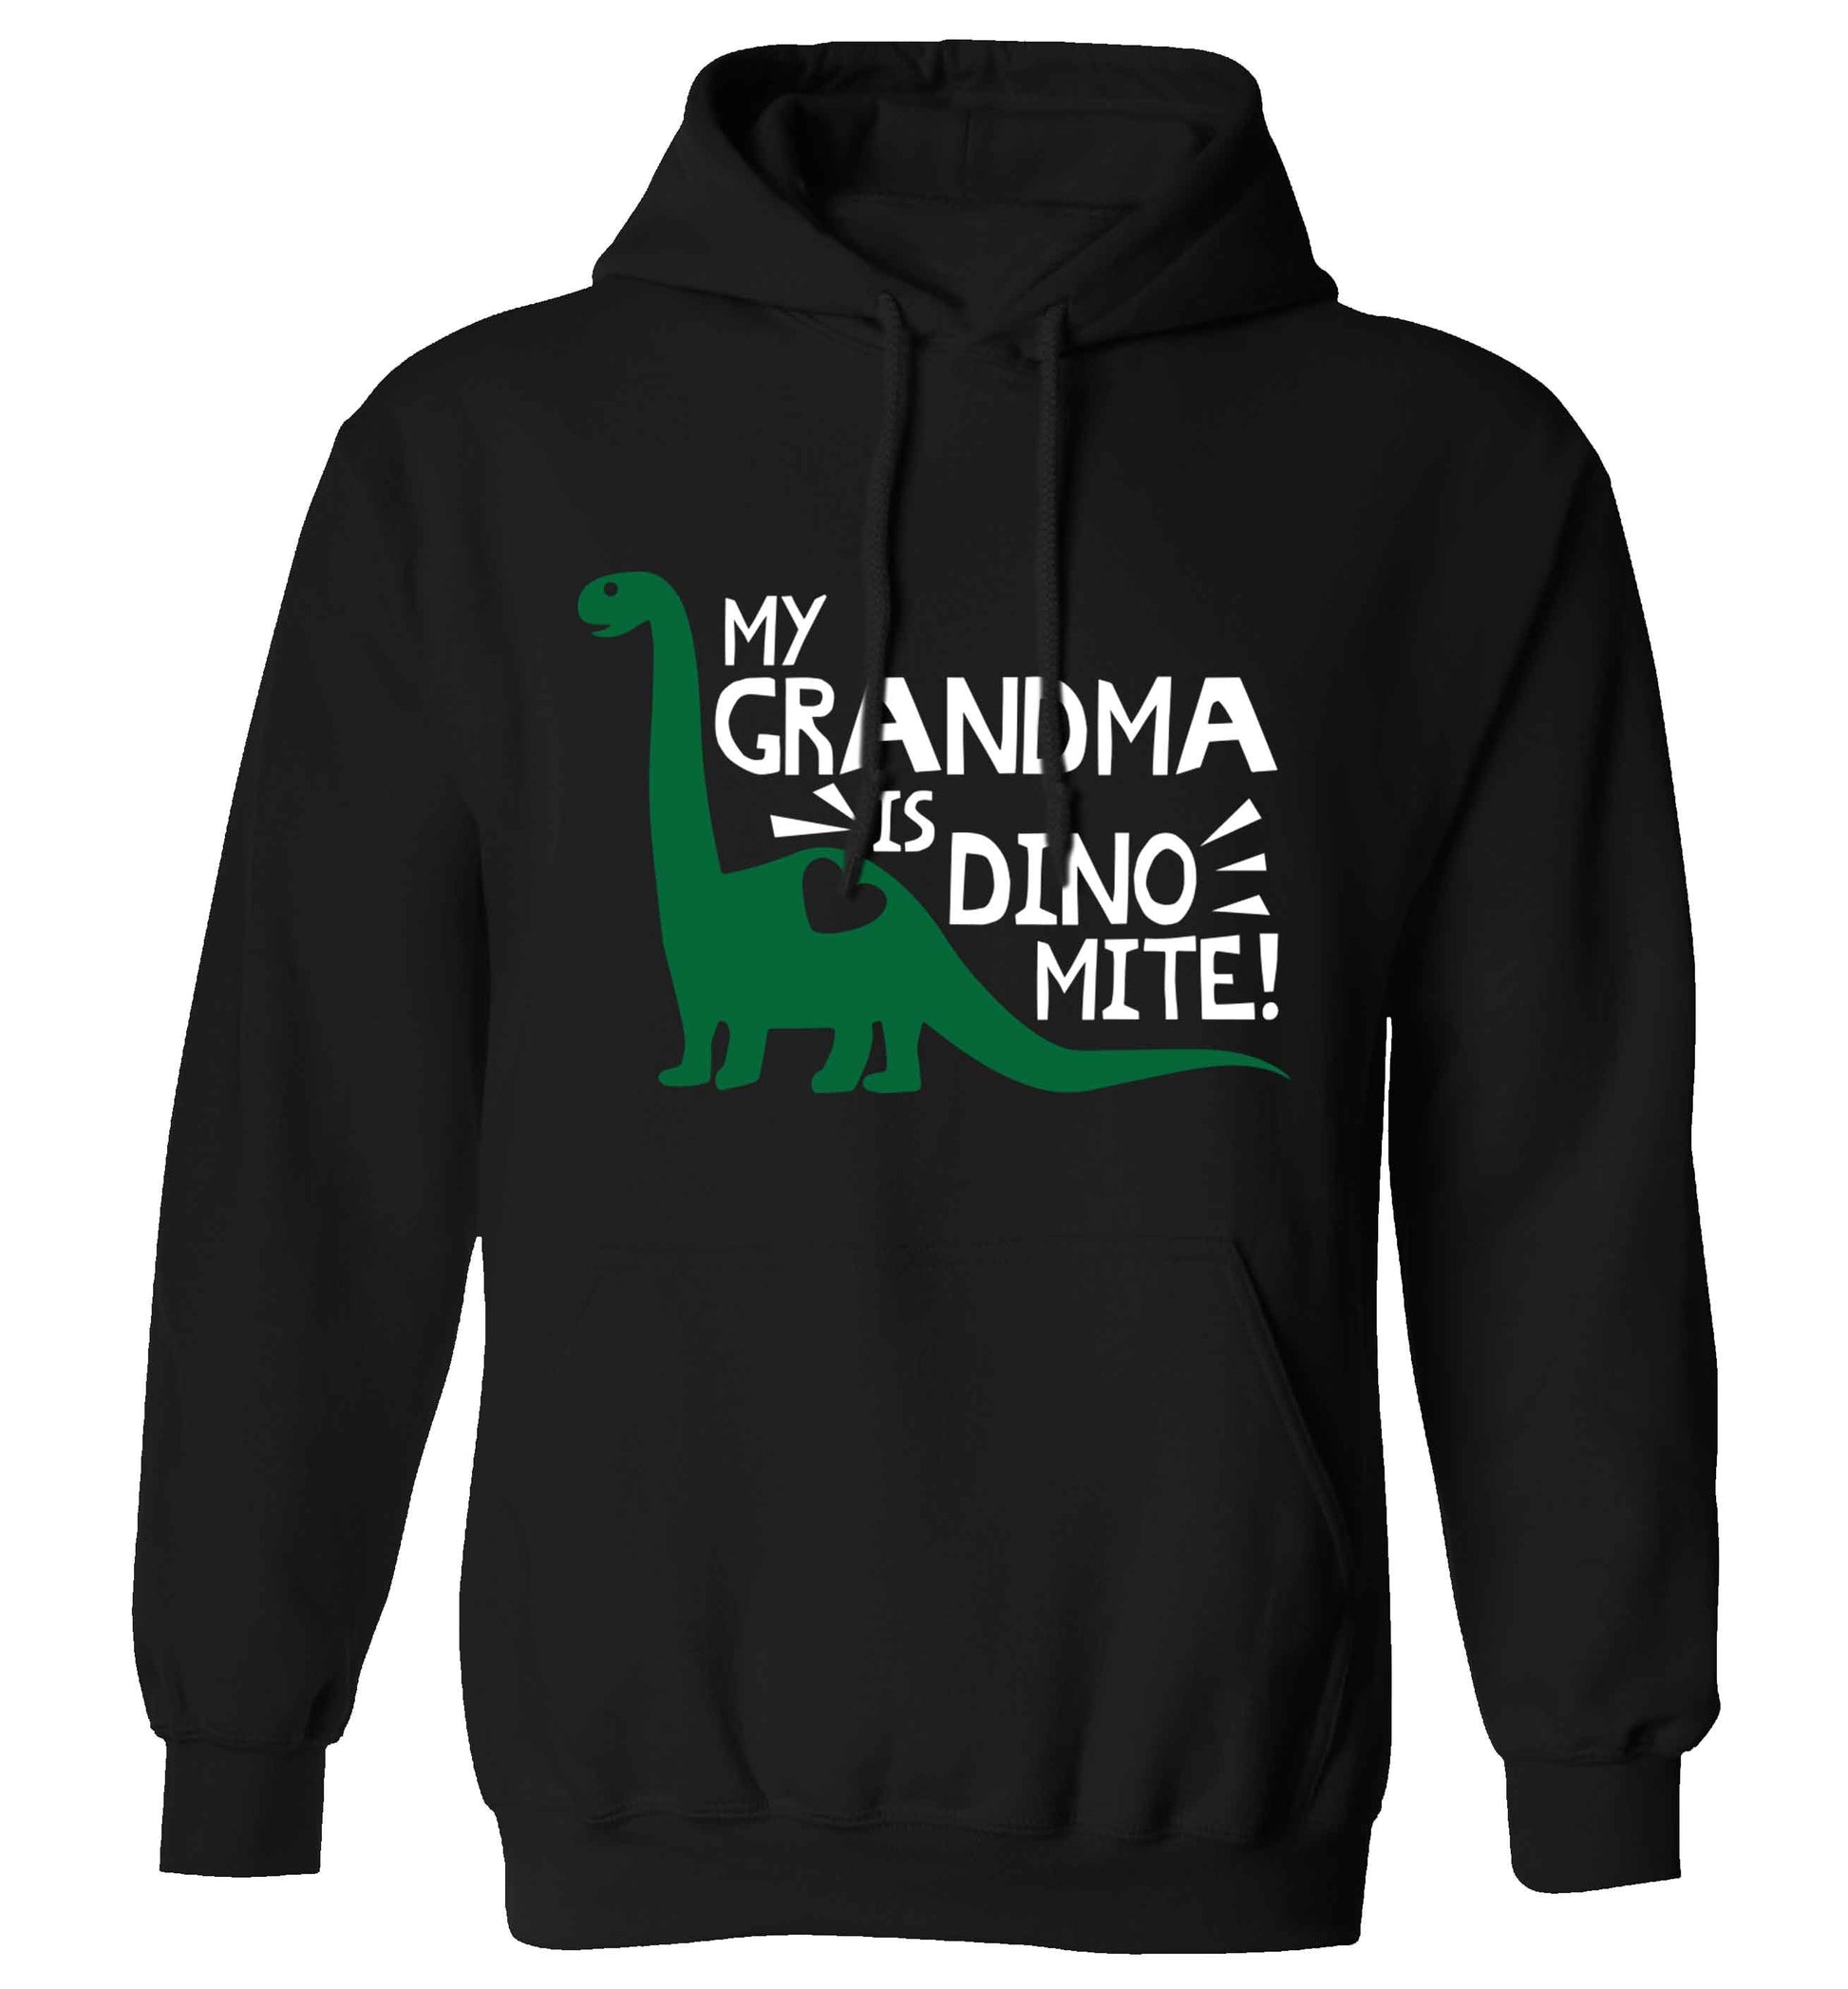 My grandma is dinomite! adults unisex black hoodie 2XL